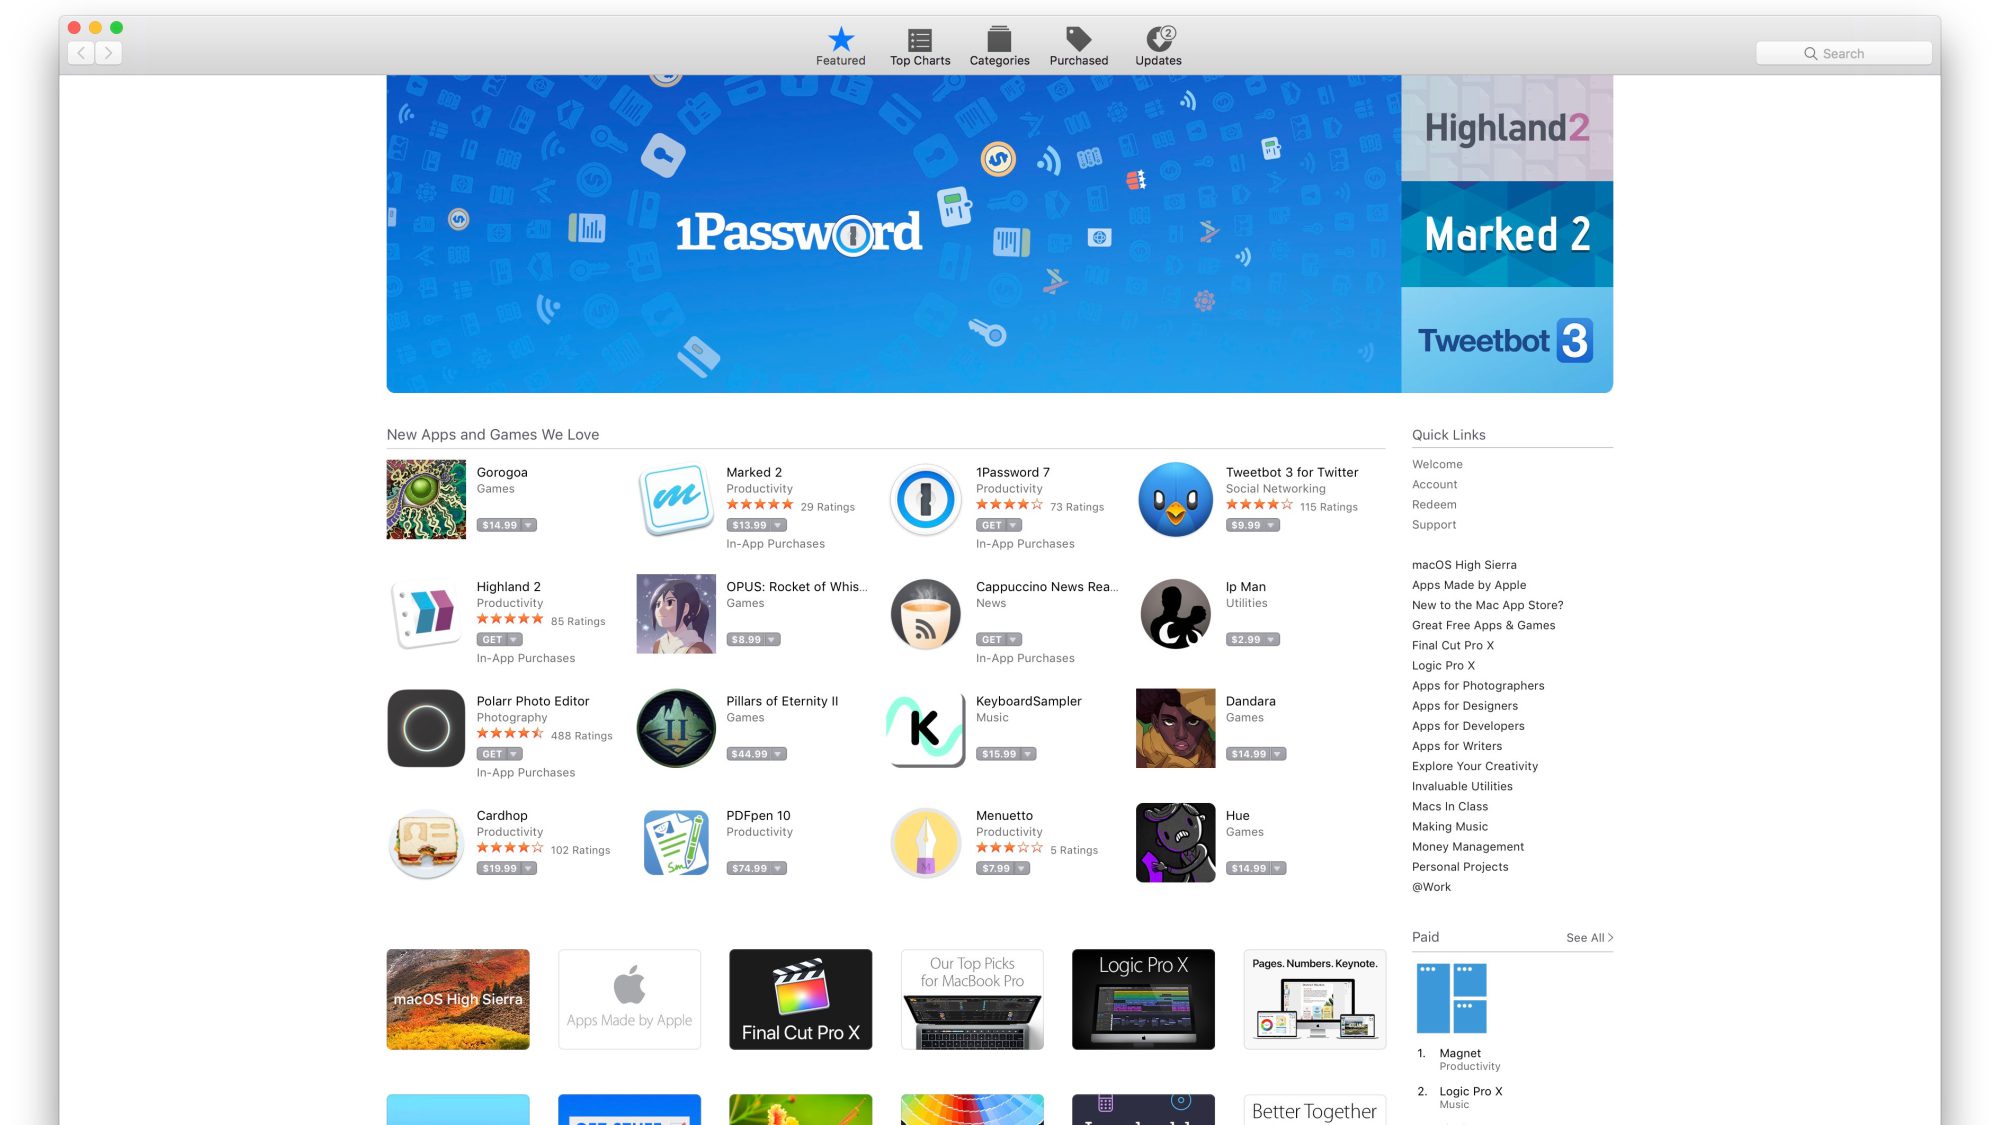 MacOS 10.14, Mac App Store, iOS 11